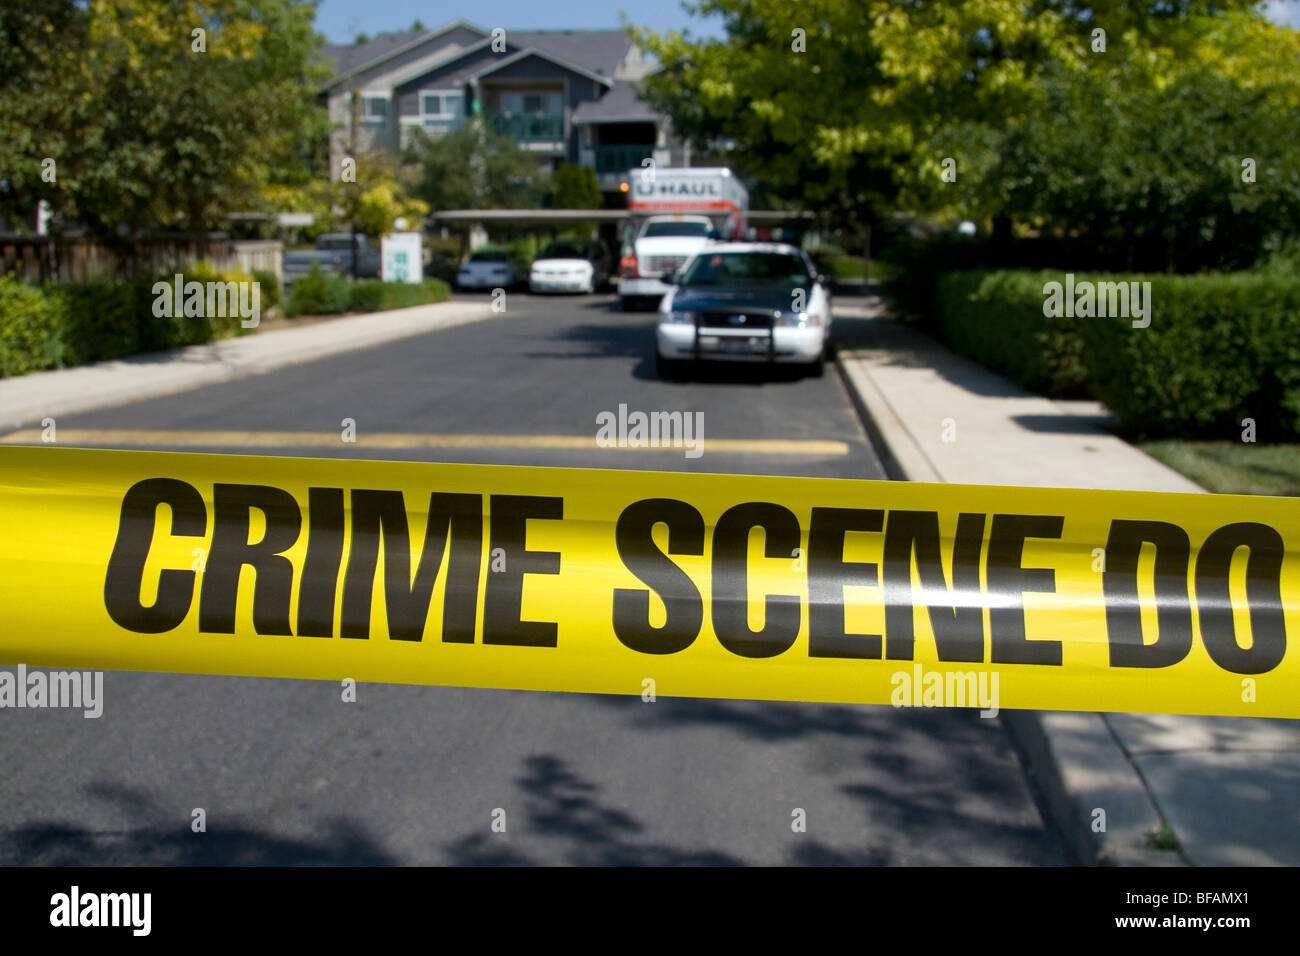 La policía alerta de cinta de la escena del crimen en contra de entrar en una zona de crimen en Boise, Idaho, USA. Foto de stock